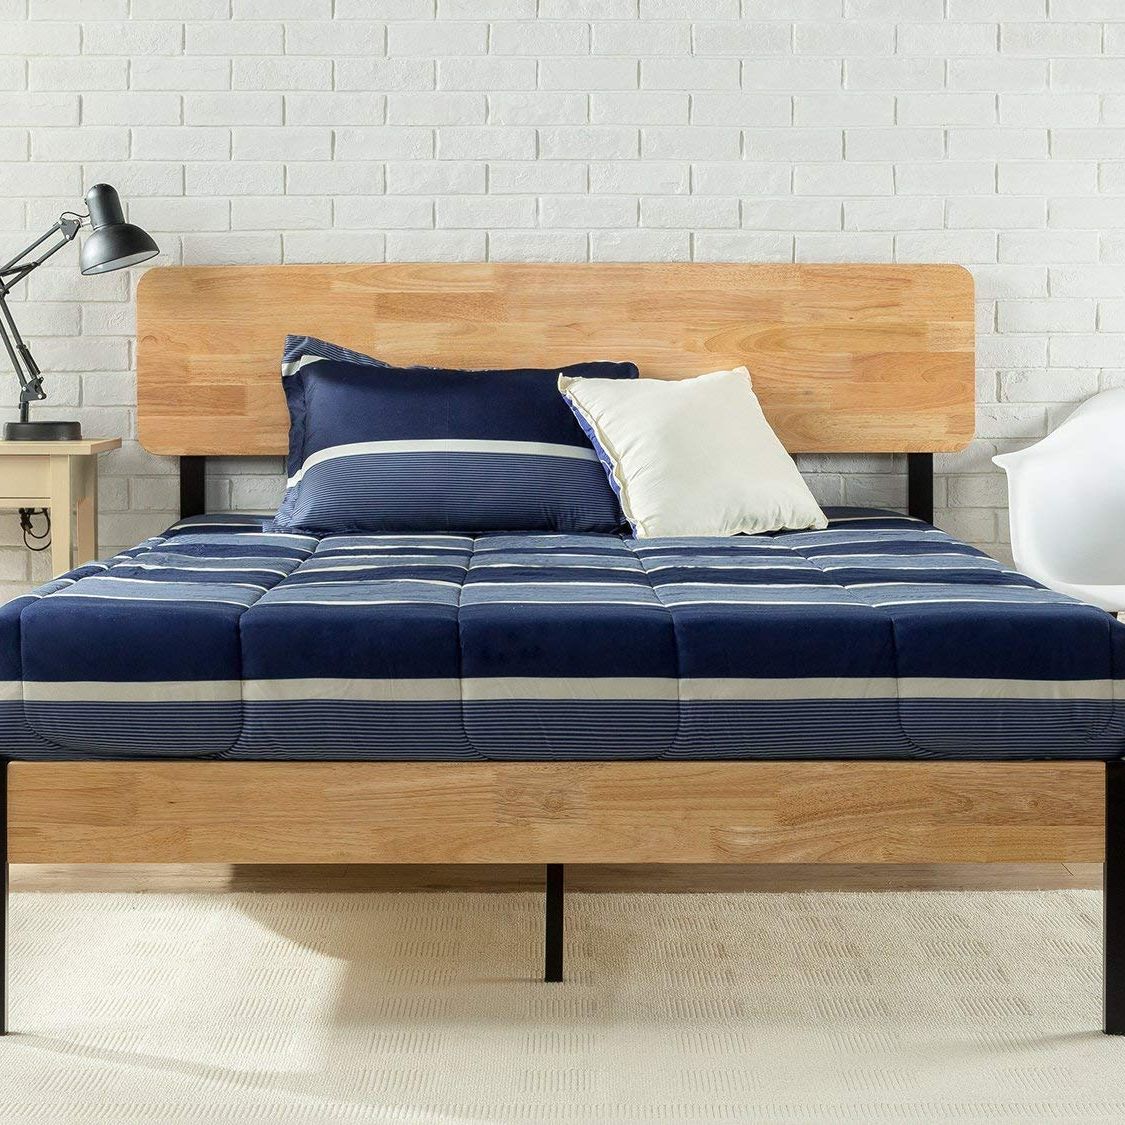 21 Best Platform Beds 2021 The Strategist, Full Size Wood Platform Bed Frame